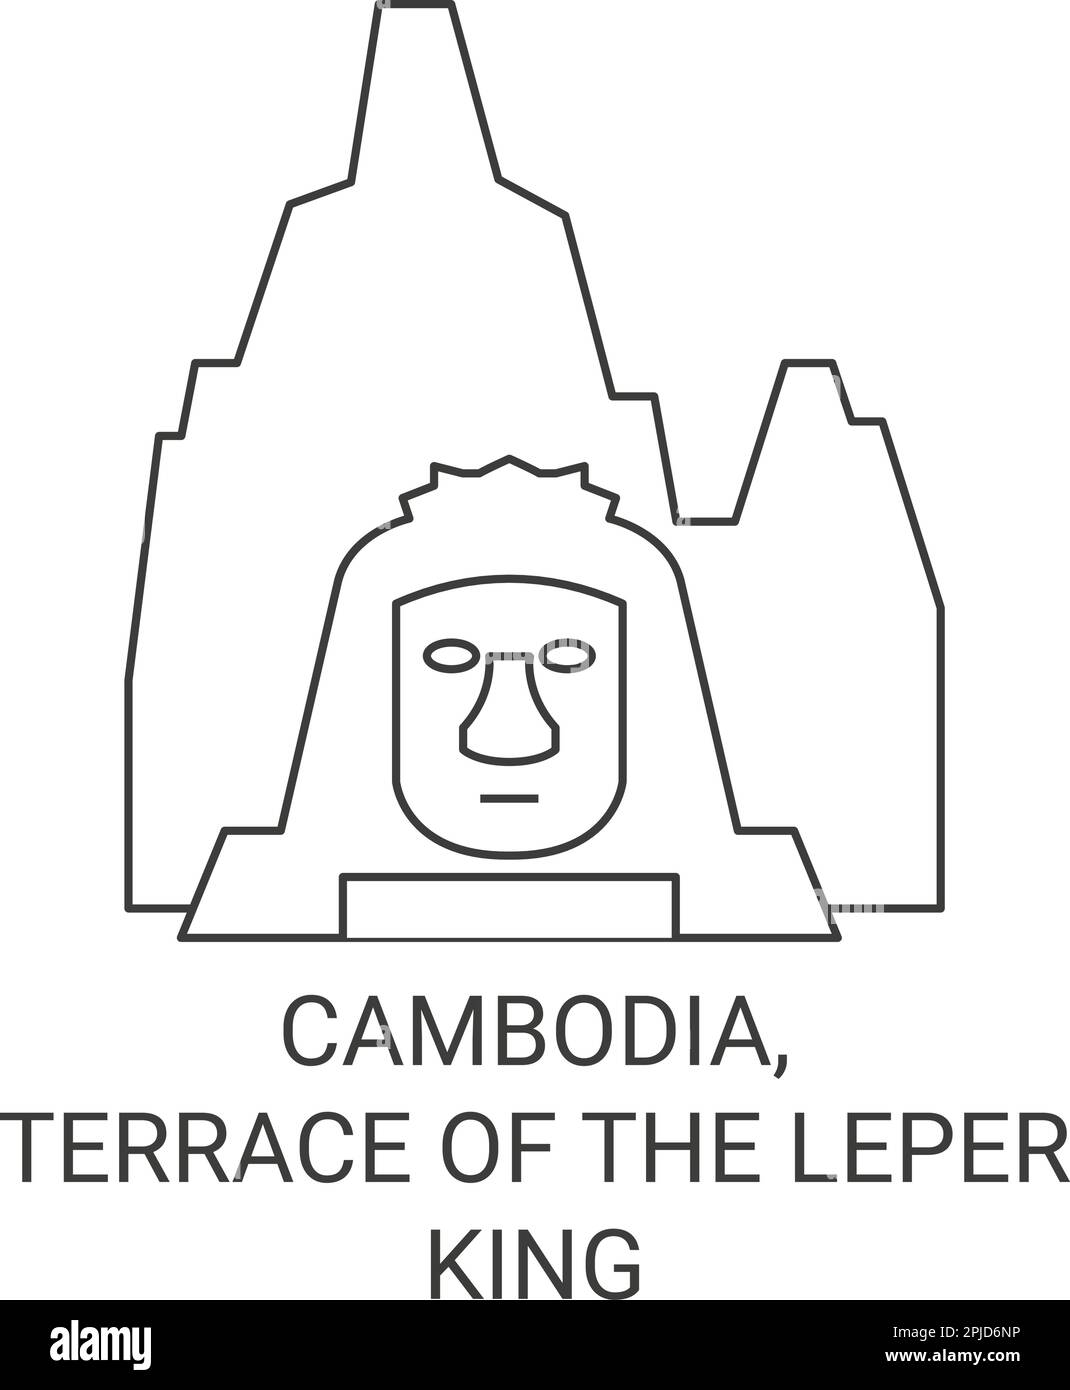 Cambodia, Terrace Of The Leper King travel landmark vector illustration Stock Vector